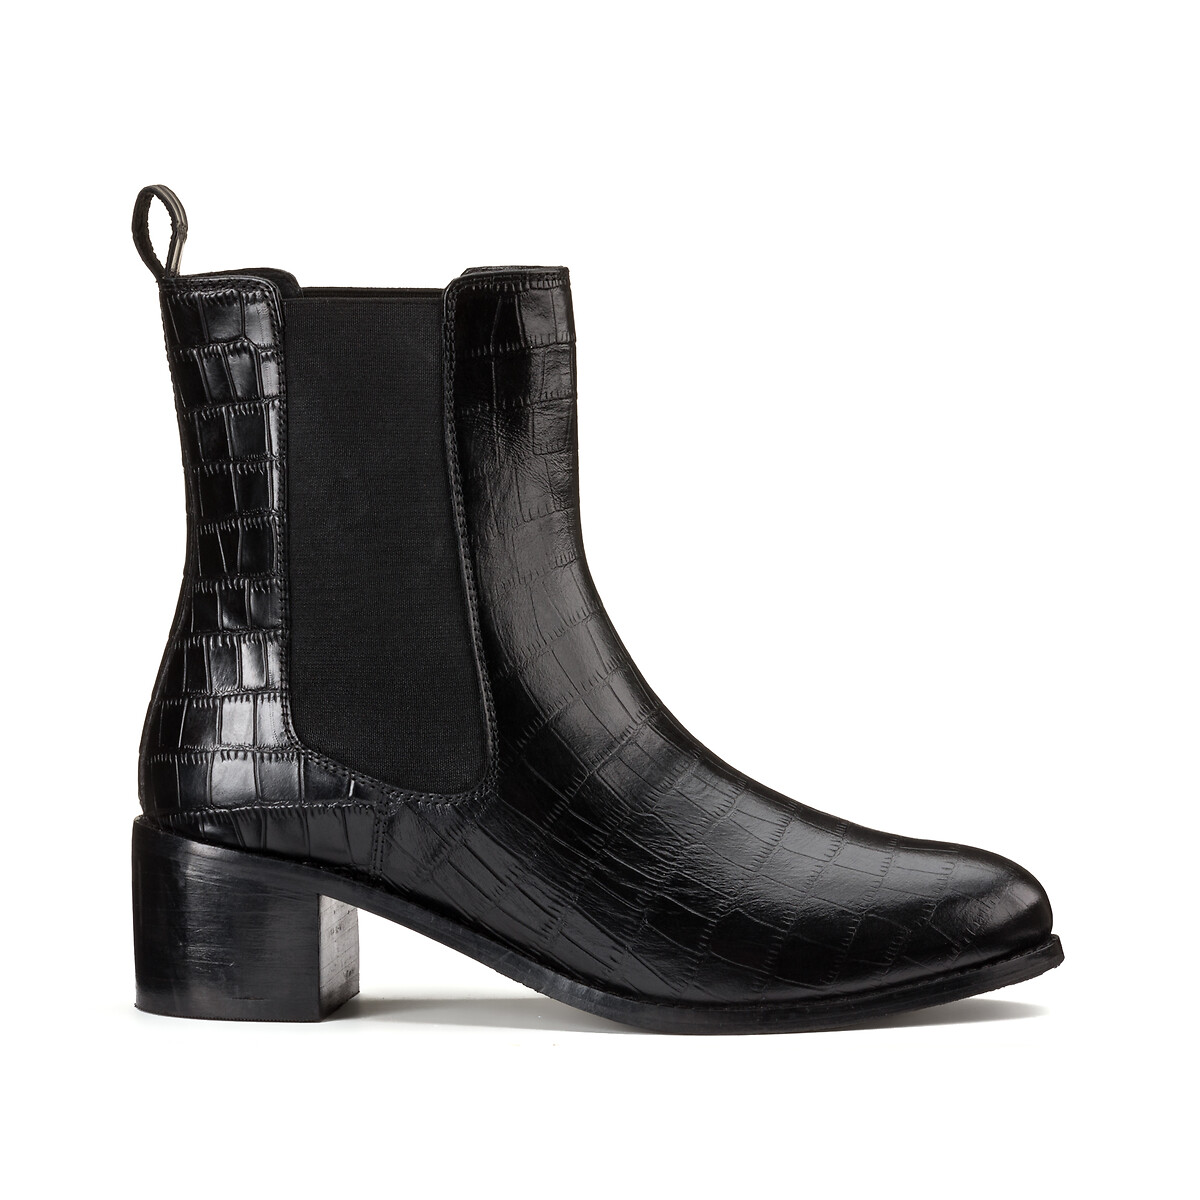 Ботинки кожаные на широком каблуке для широкой стопы размеры 38-45 44 черный туфли laredoute туфли на каблуке шпильке для широкой стопы размеры 38 45 38 серебристый